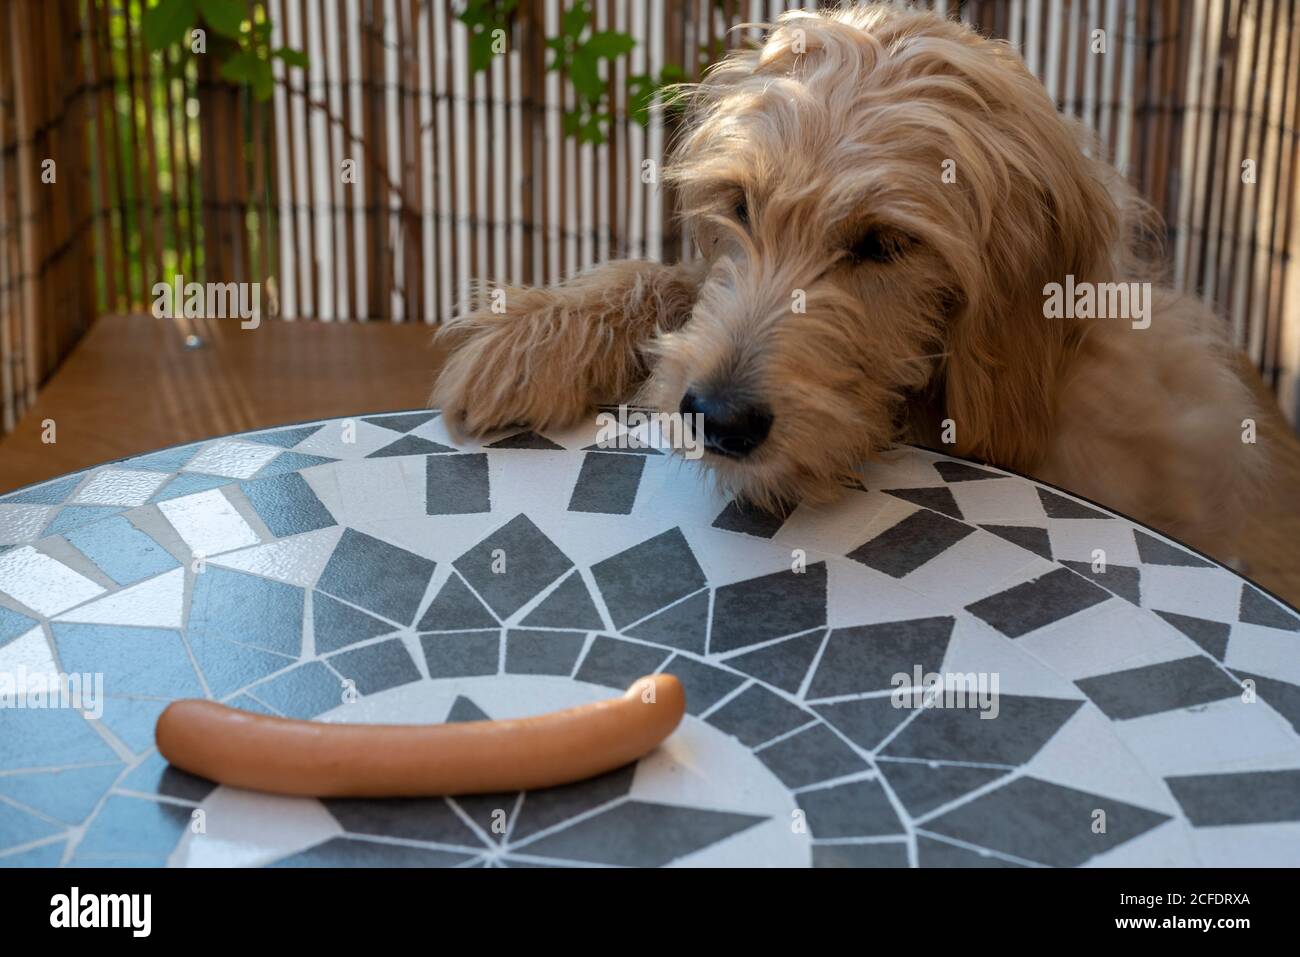 Der junge Hund Mini Golddoodle schaut sich eine Wiener Wurst an  Stockfotografie - Alamy